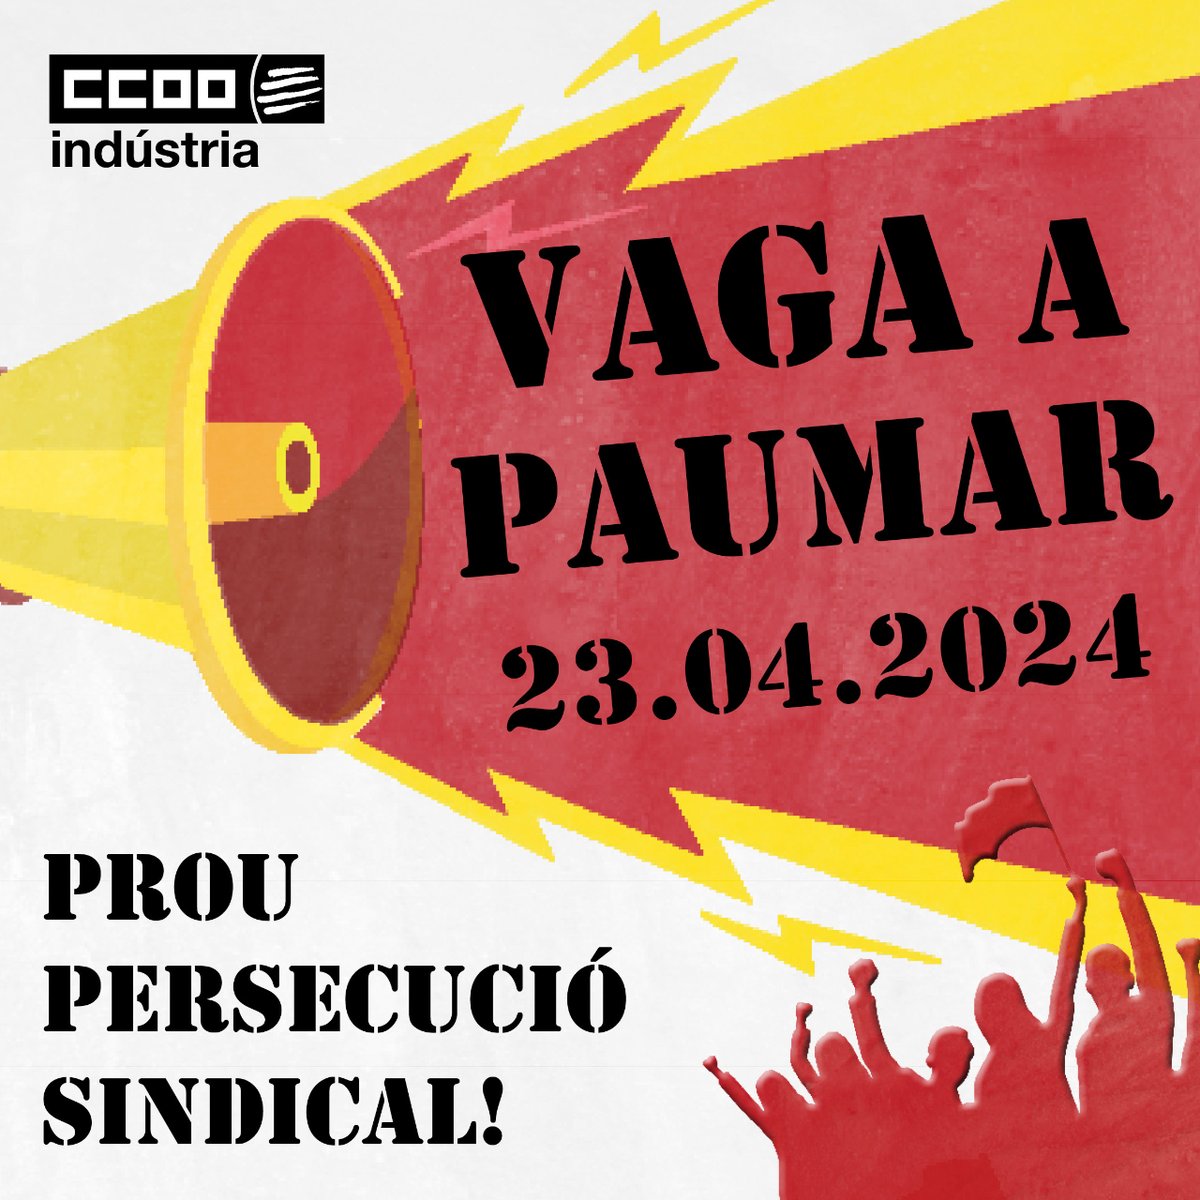 🔴 CCOO convoquem VAGA a Paumar Outsourcing el 23 d'abril contra la persecució sindical per part de l'empresa! Paumar ha optat per la confrontació en lloc de resoldre els problemes que afecten la plantilla: ritmes de treball, seguretat, respecte drets... ccoo.cat/industria/noti…